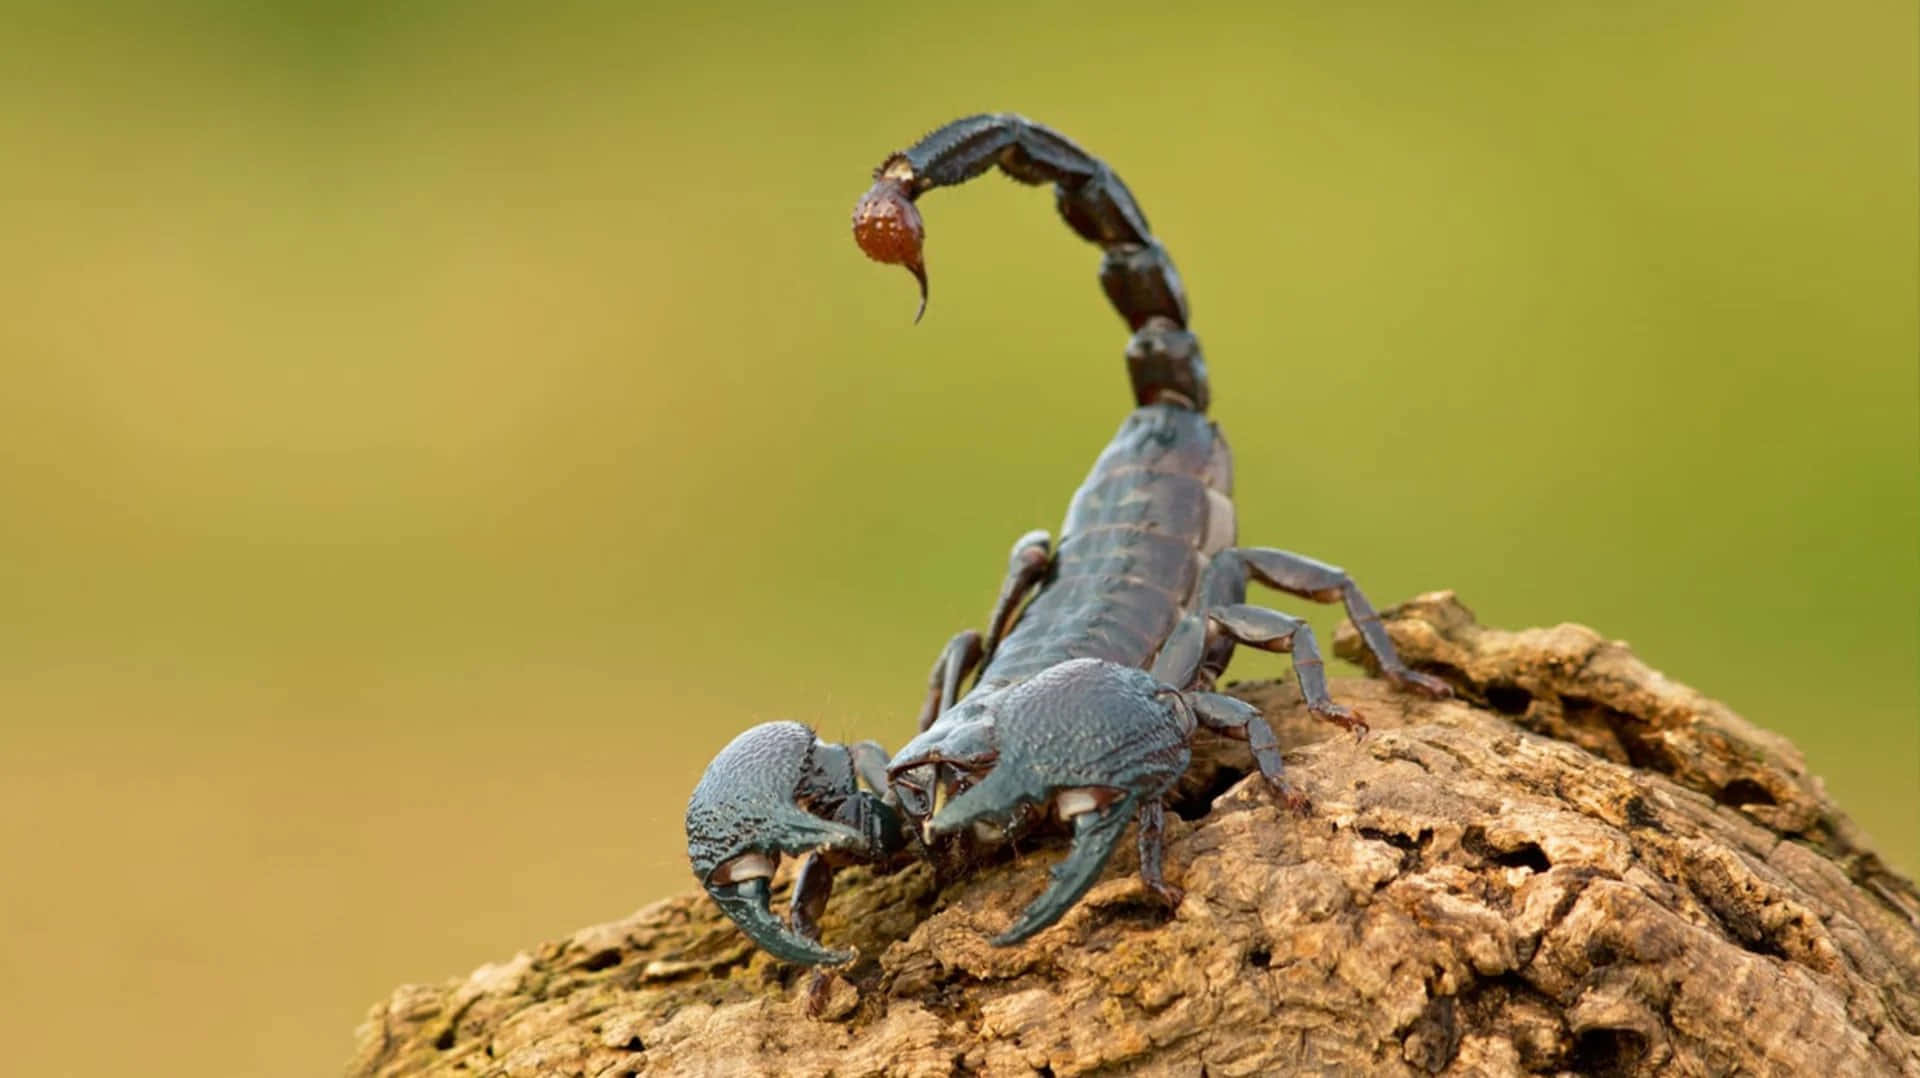 A fierce scorpion ready to strike.